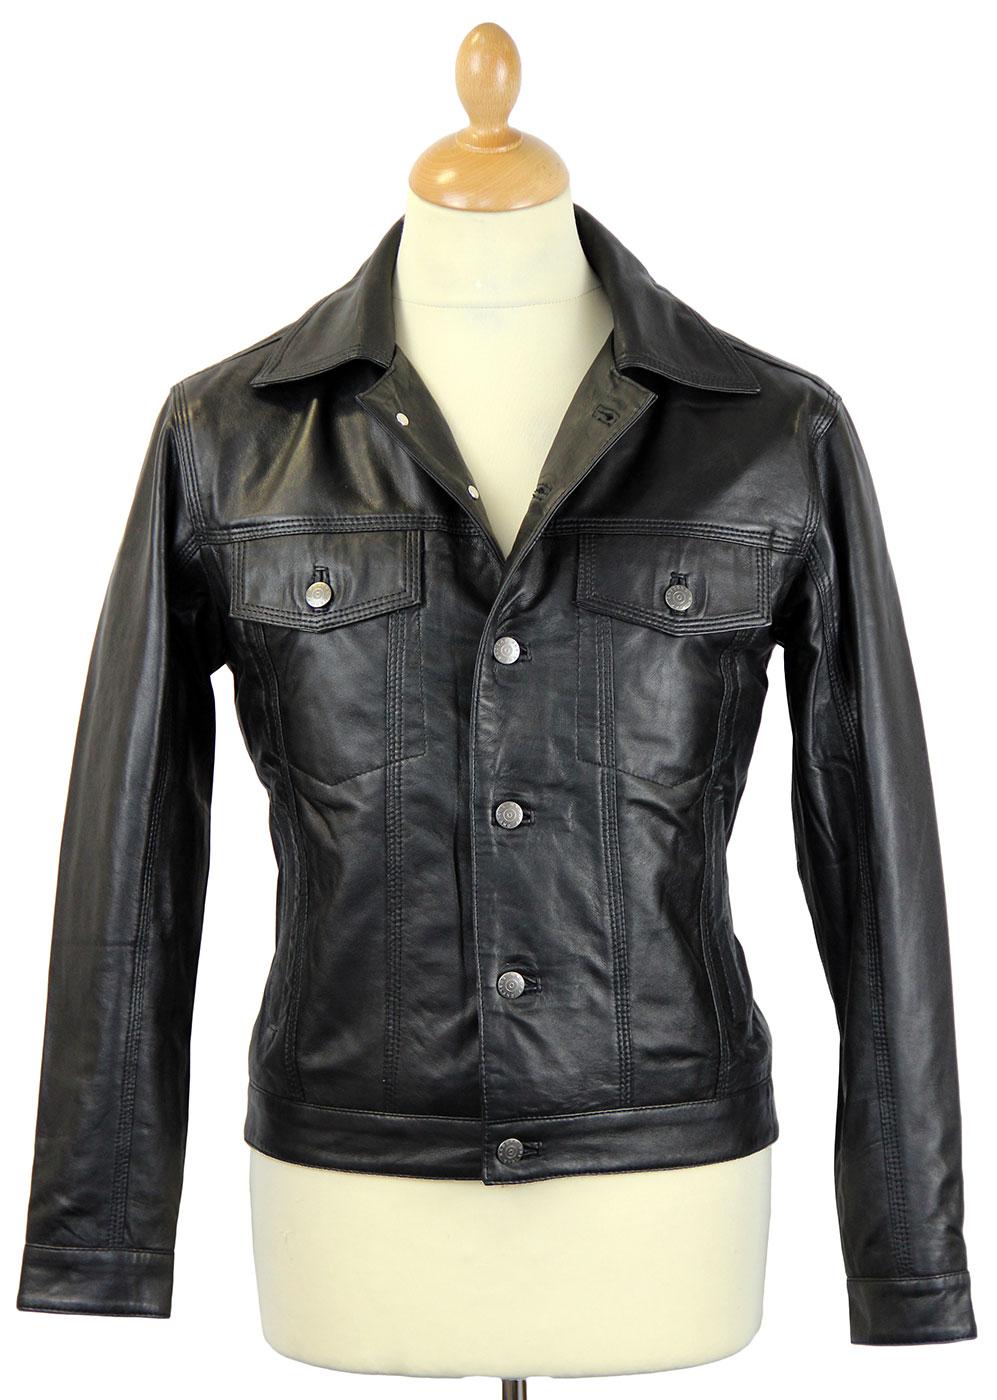 Badlands MADCAP ENGLAND Retro Leather Jacket BLACK